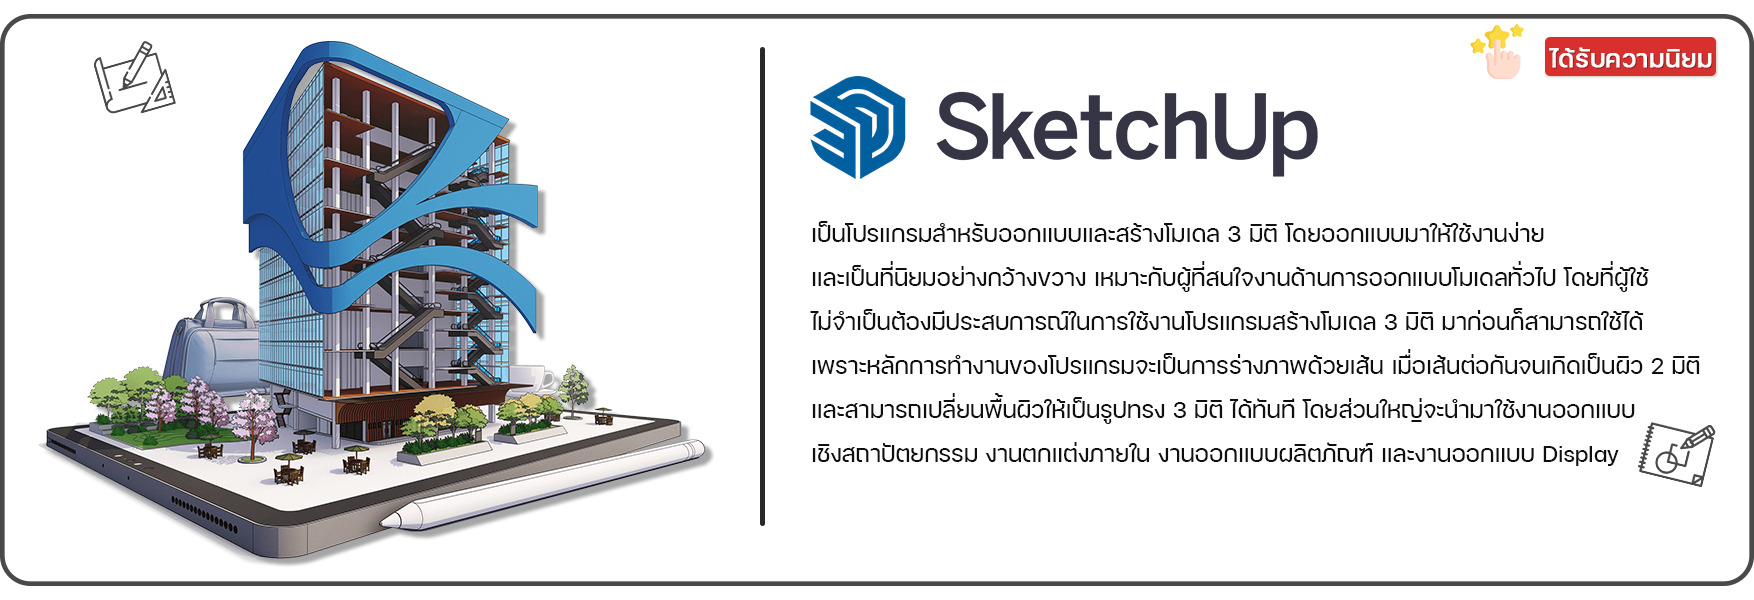 โปรแกรม SketchUp Pro | โปรแกรม SketchUp pro ราคา ขอใบเสนอราคา SketchUp pro